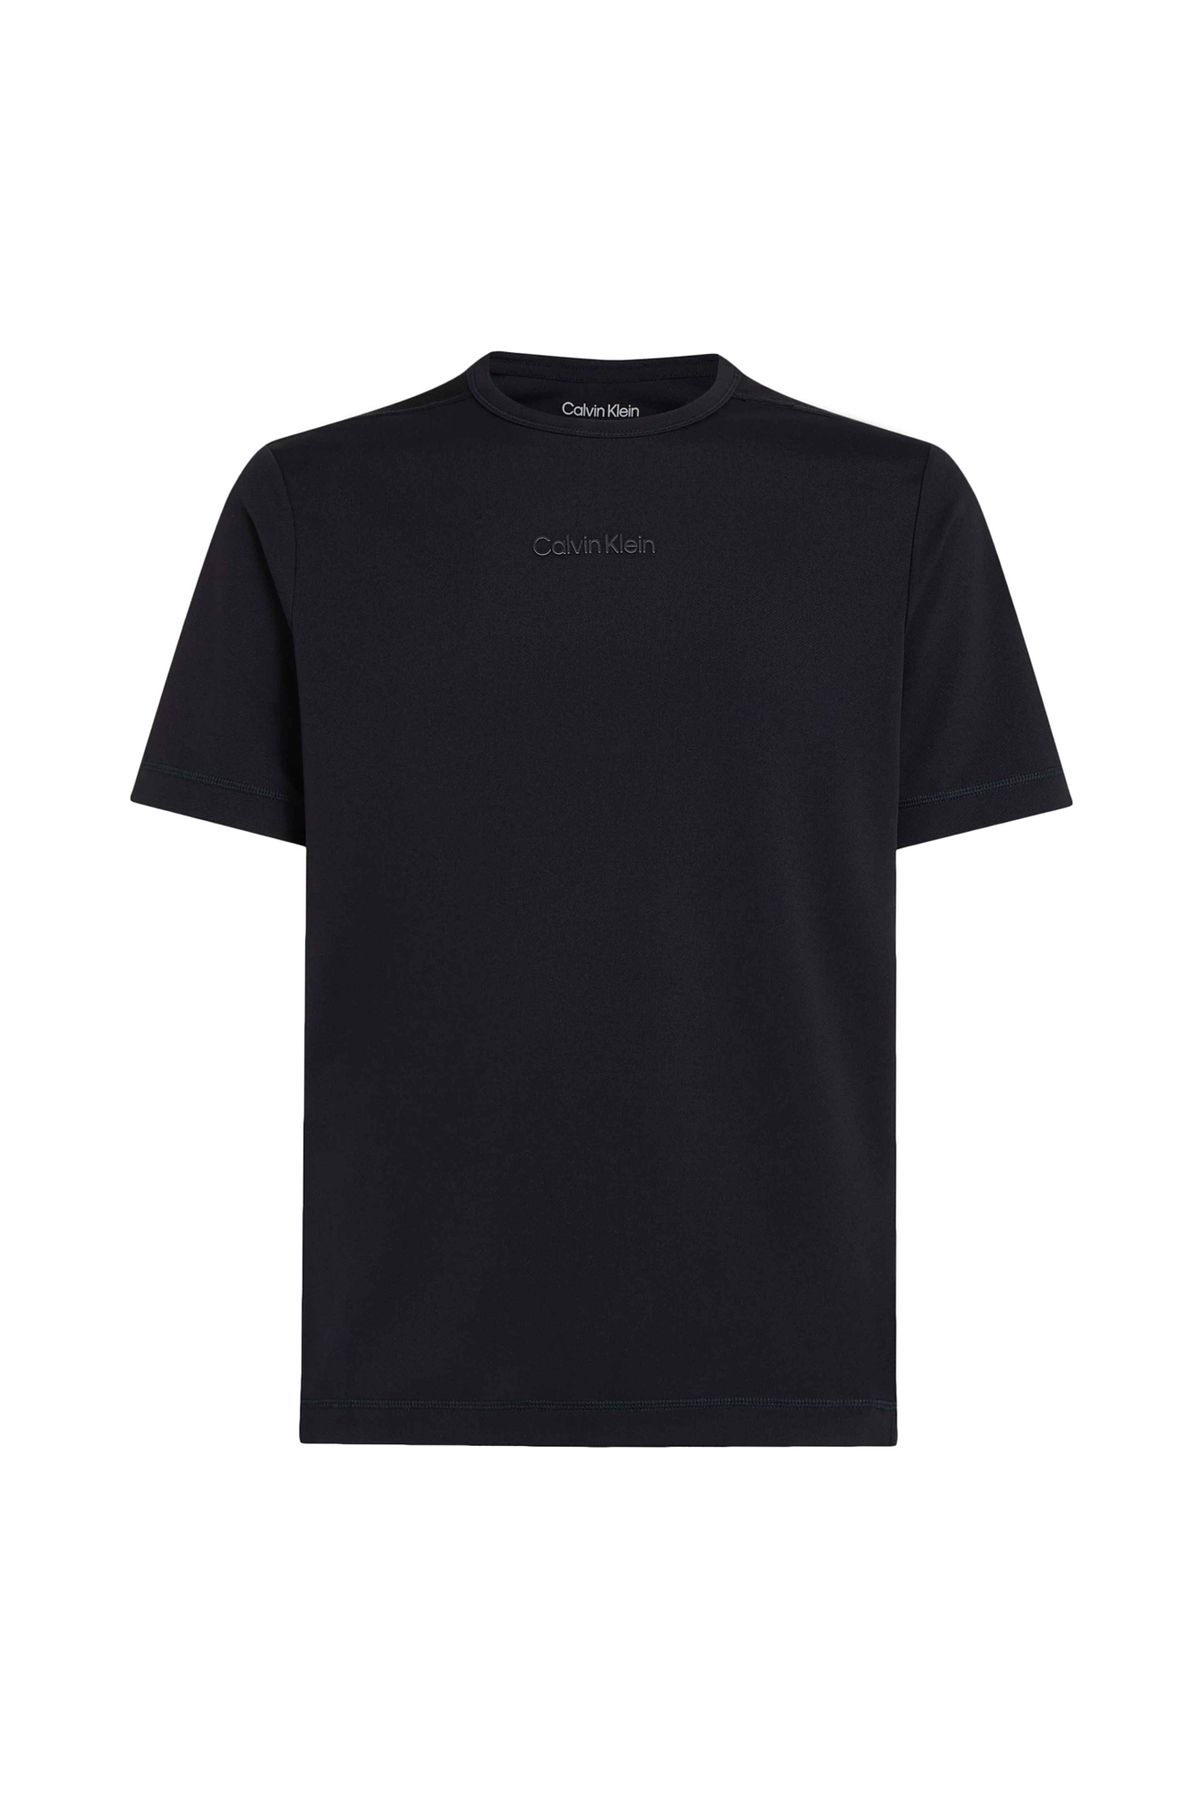 Calvin Klein Siyah Erkek Bisiklet Yaka T-shirt 00gms4k159bae-wo - Ss Tee